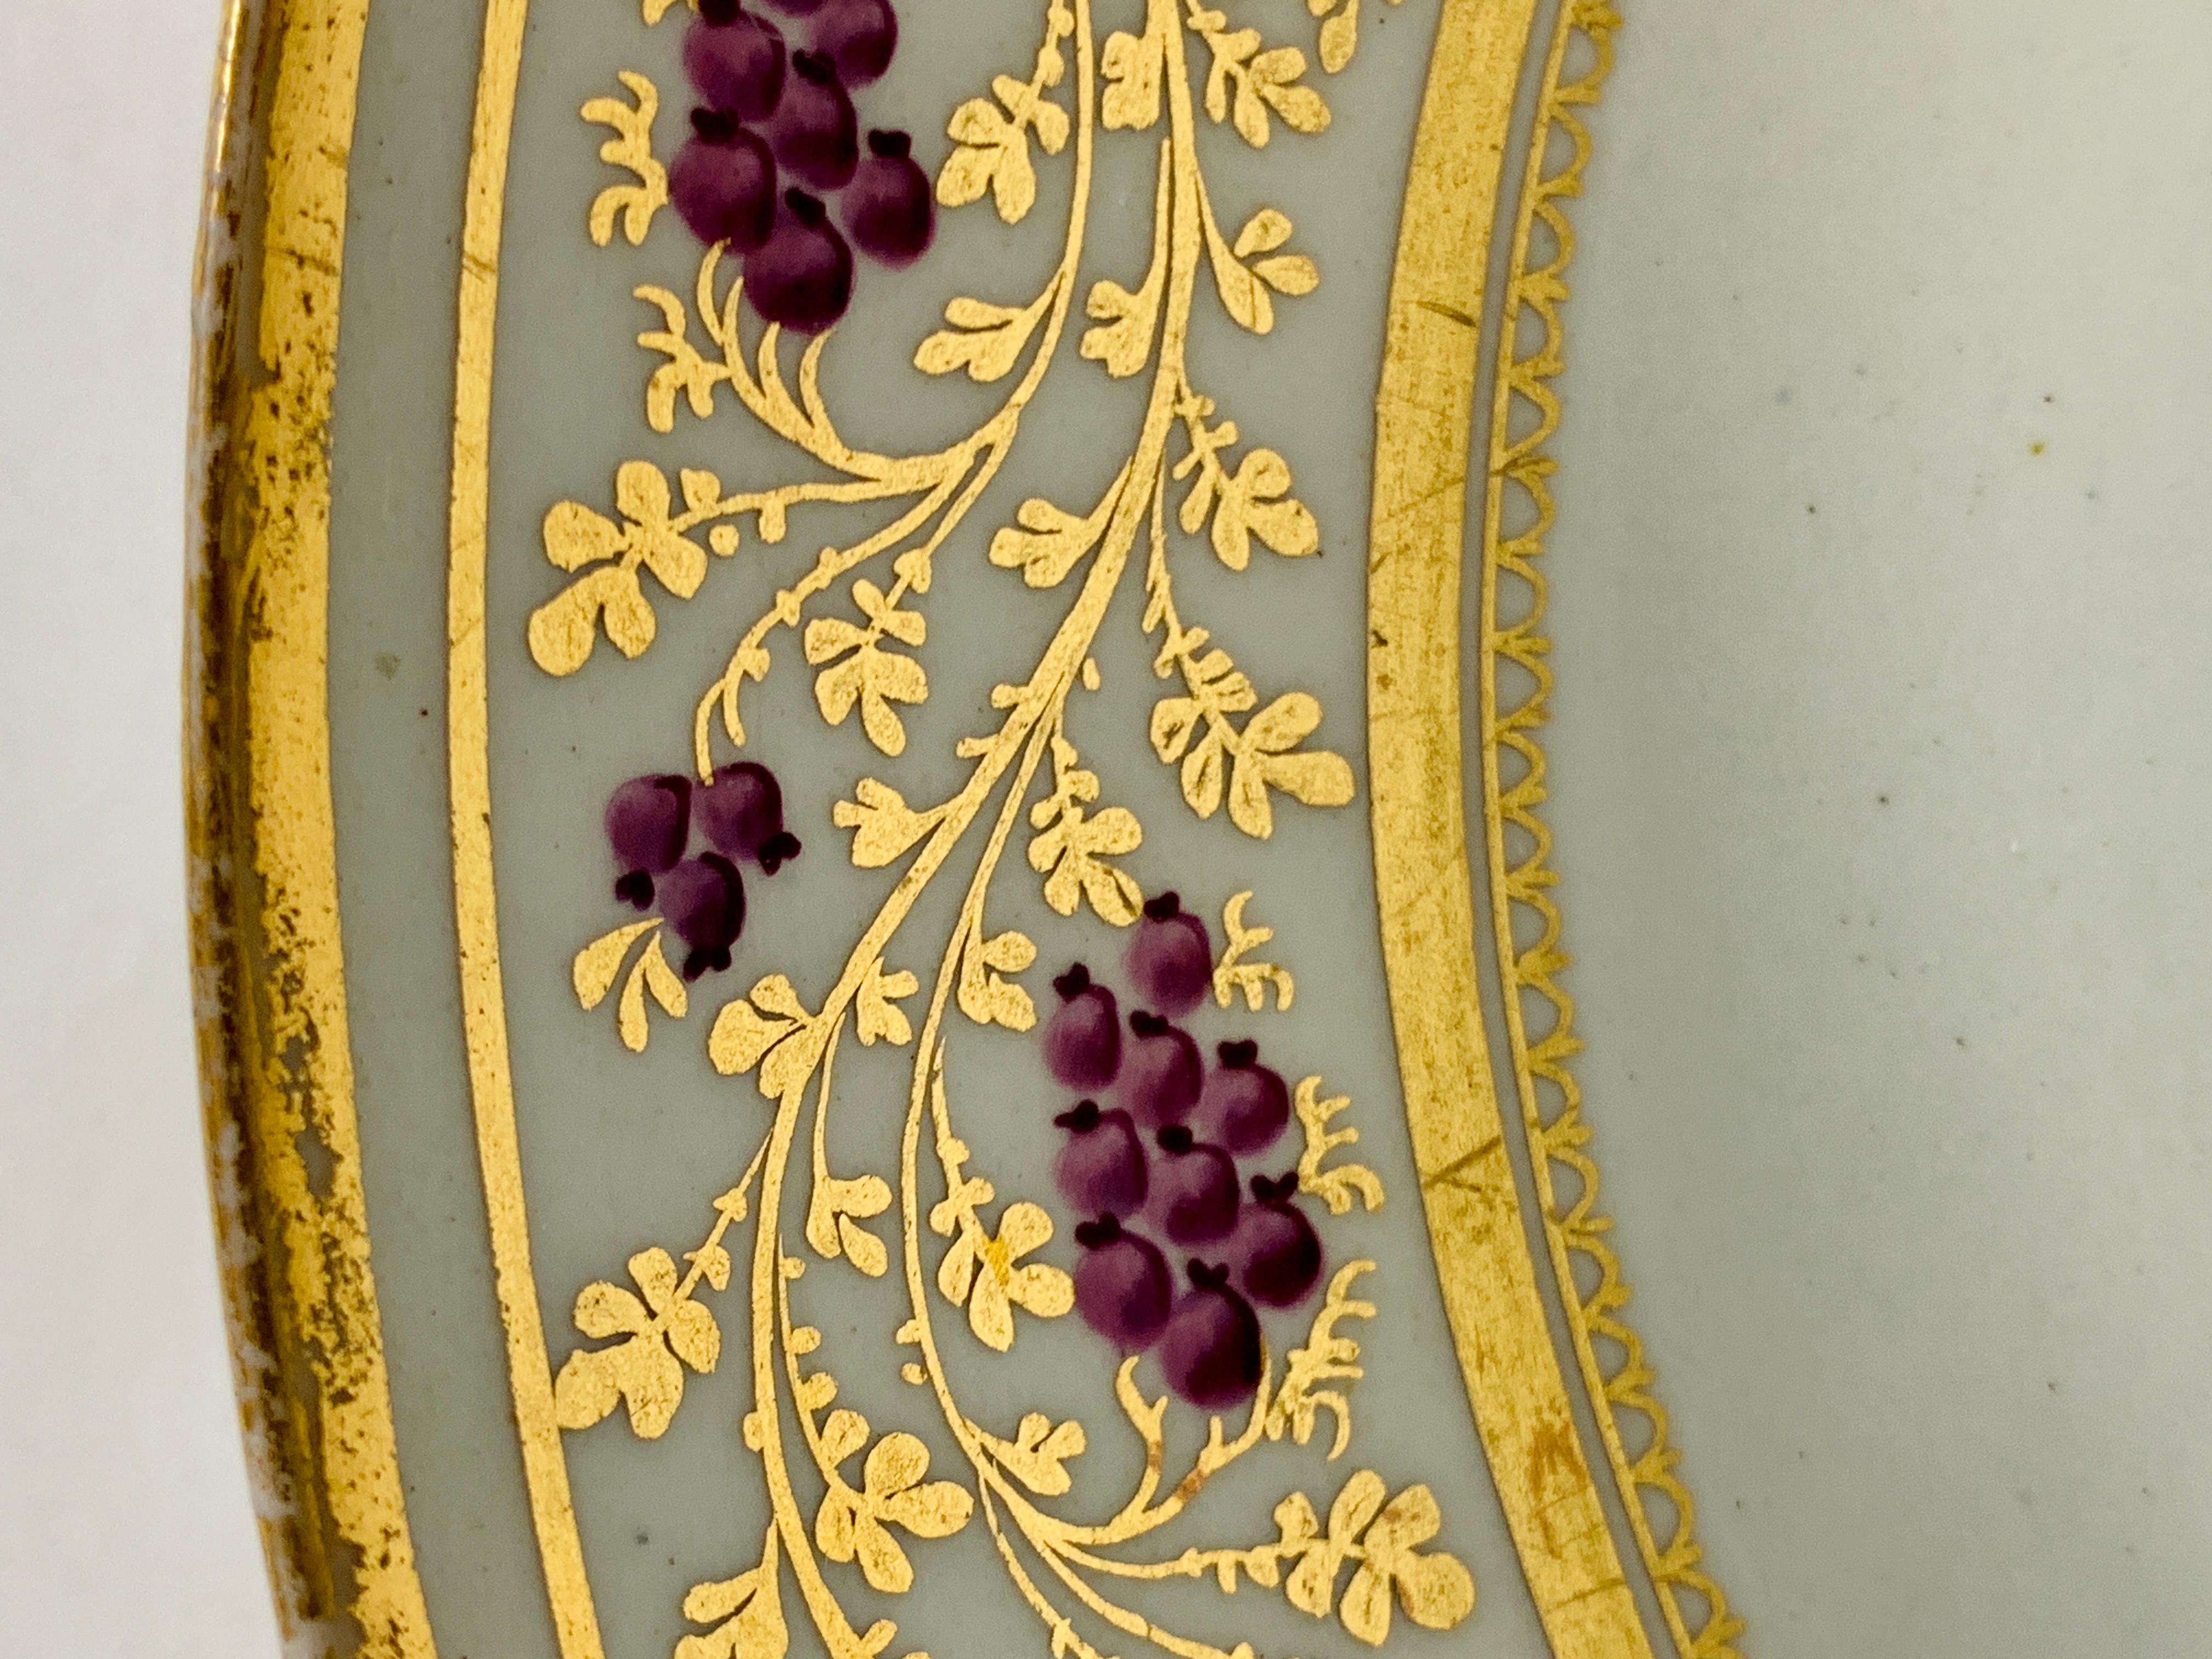 Provenienz: Die Privatsammlung von Mario Buatta
Diese exquisite Schale wurde um 1810 von New Hall in England hergestellt und zeigt violette Beeren auf einer goldenen Ranke.
Die Vergoldung ist üppig, und die violetten Beeren sind klein, aber